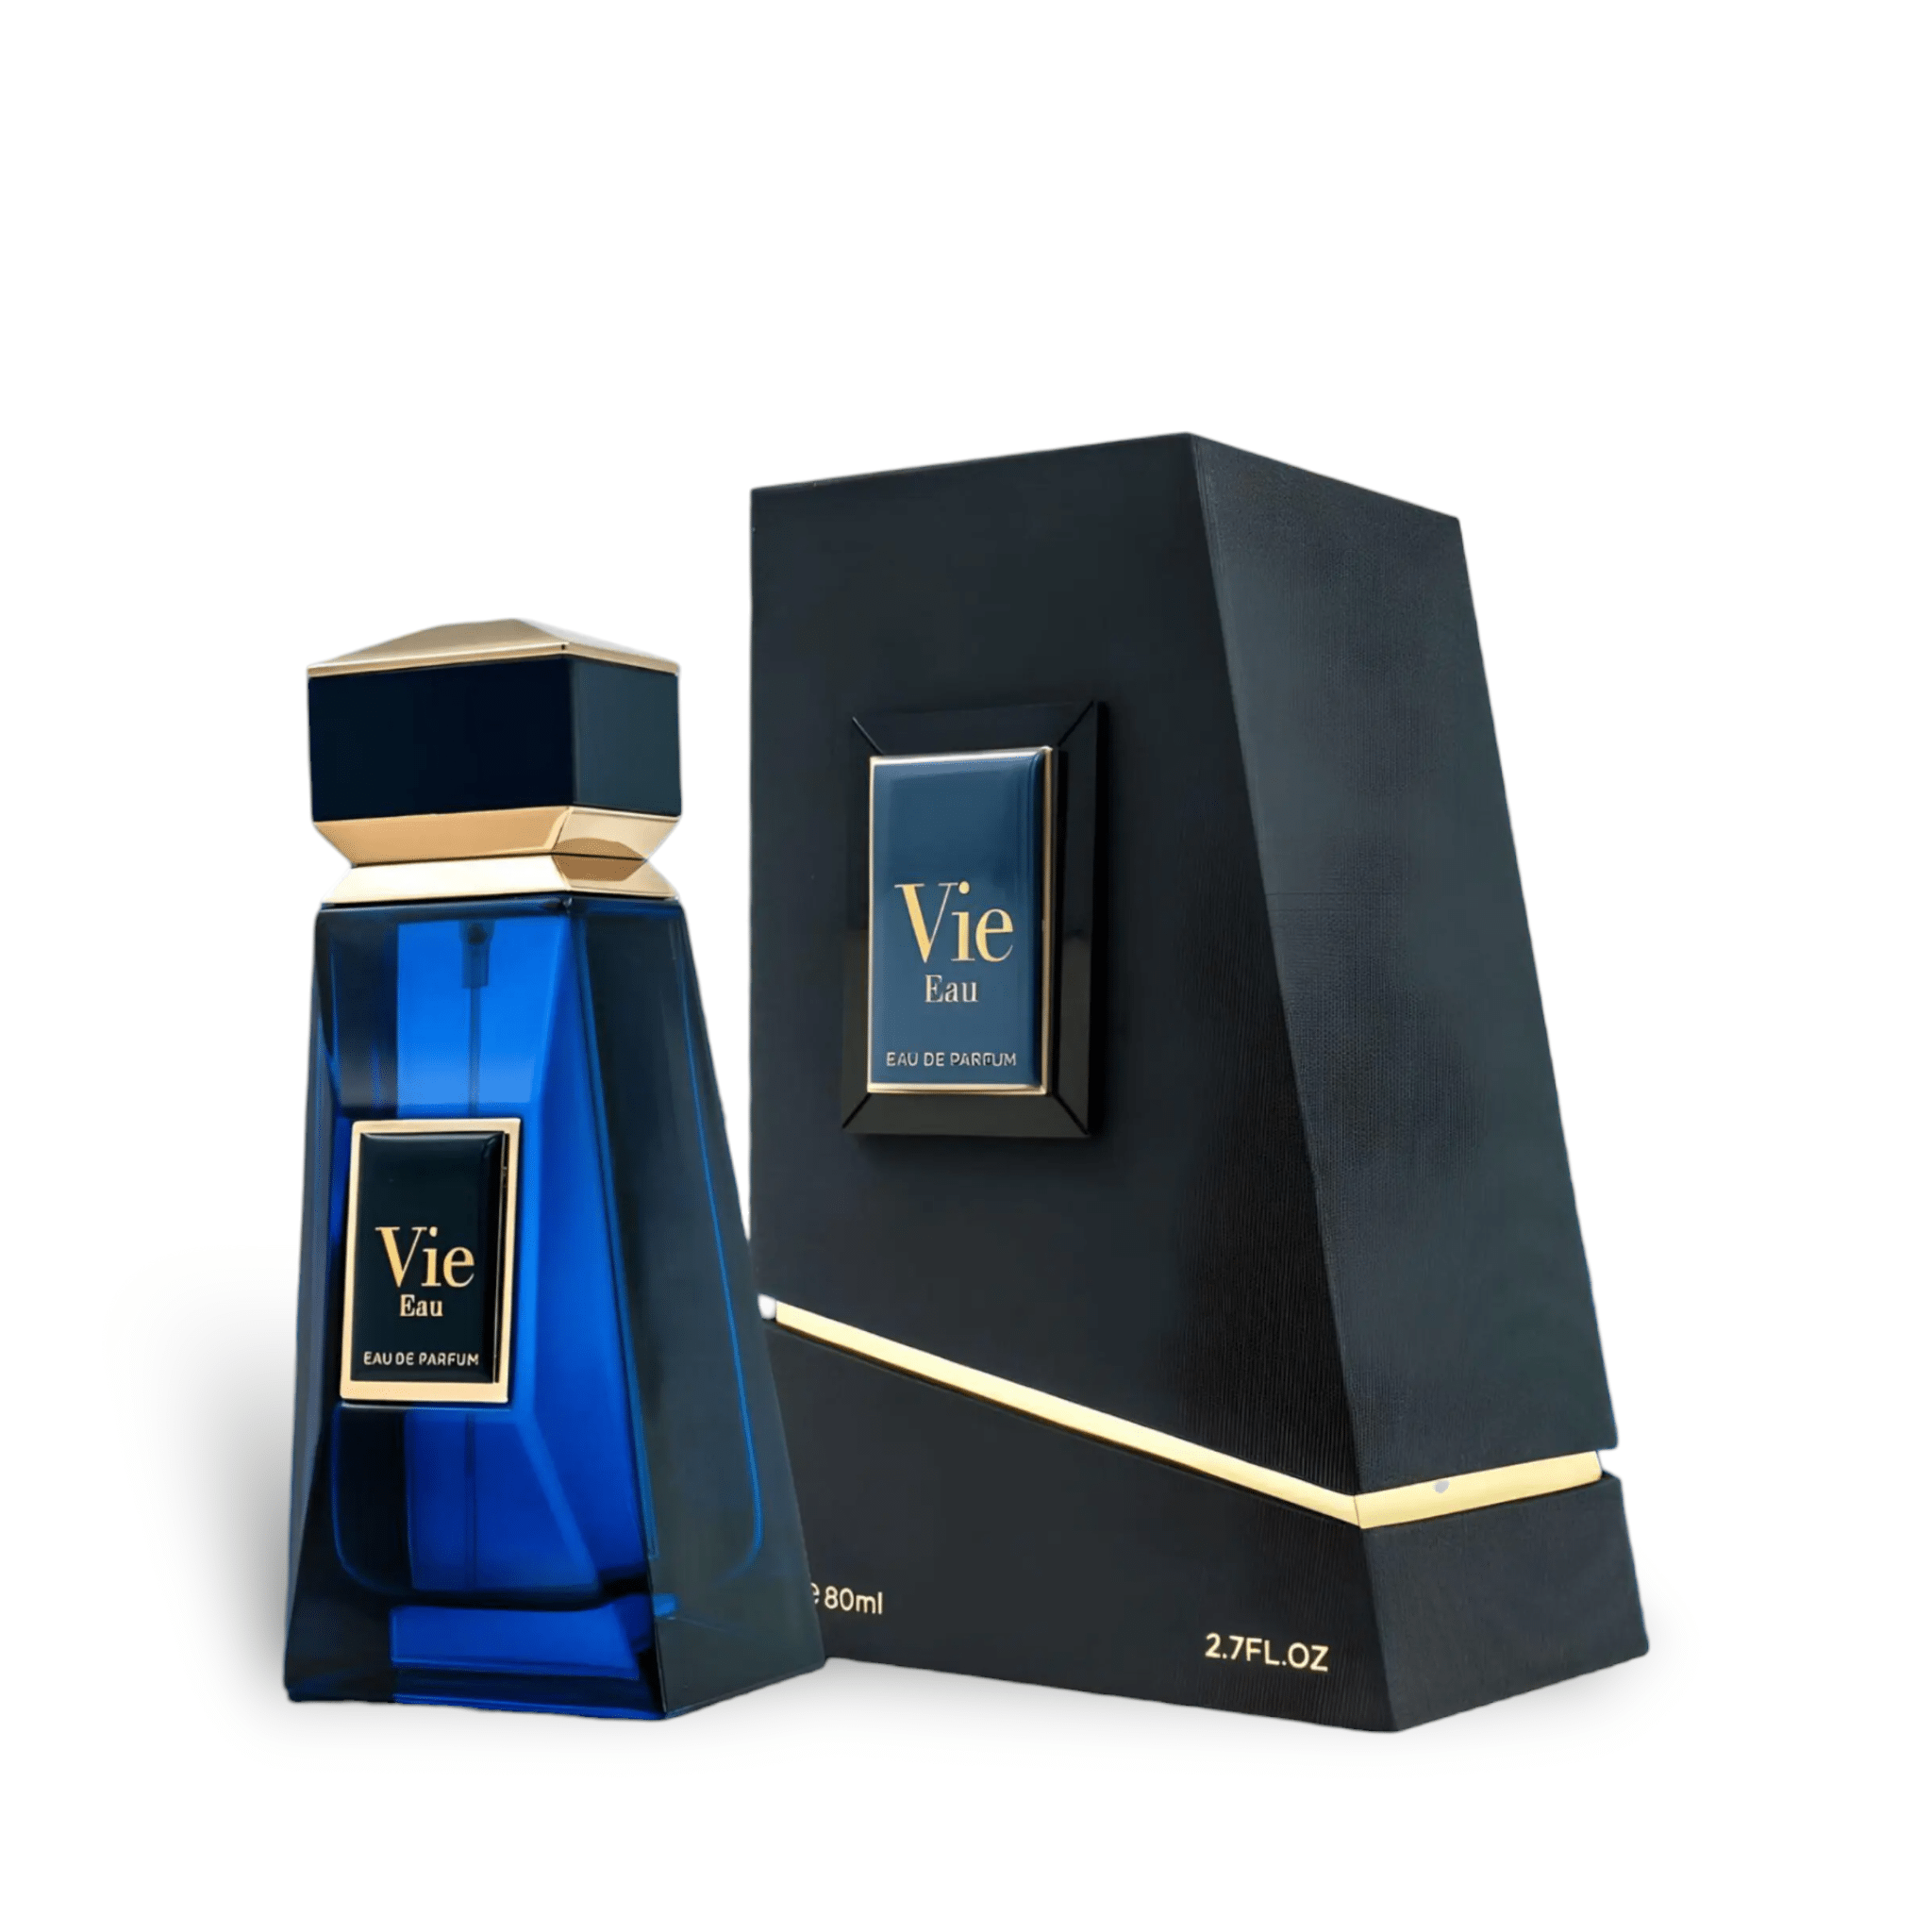 Vie Eau (Elements Of Life) Perfume Eau De Parfum 80Ml By Fa Paris (Fragrance World)